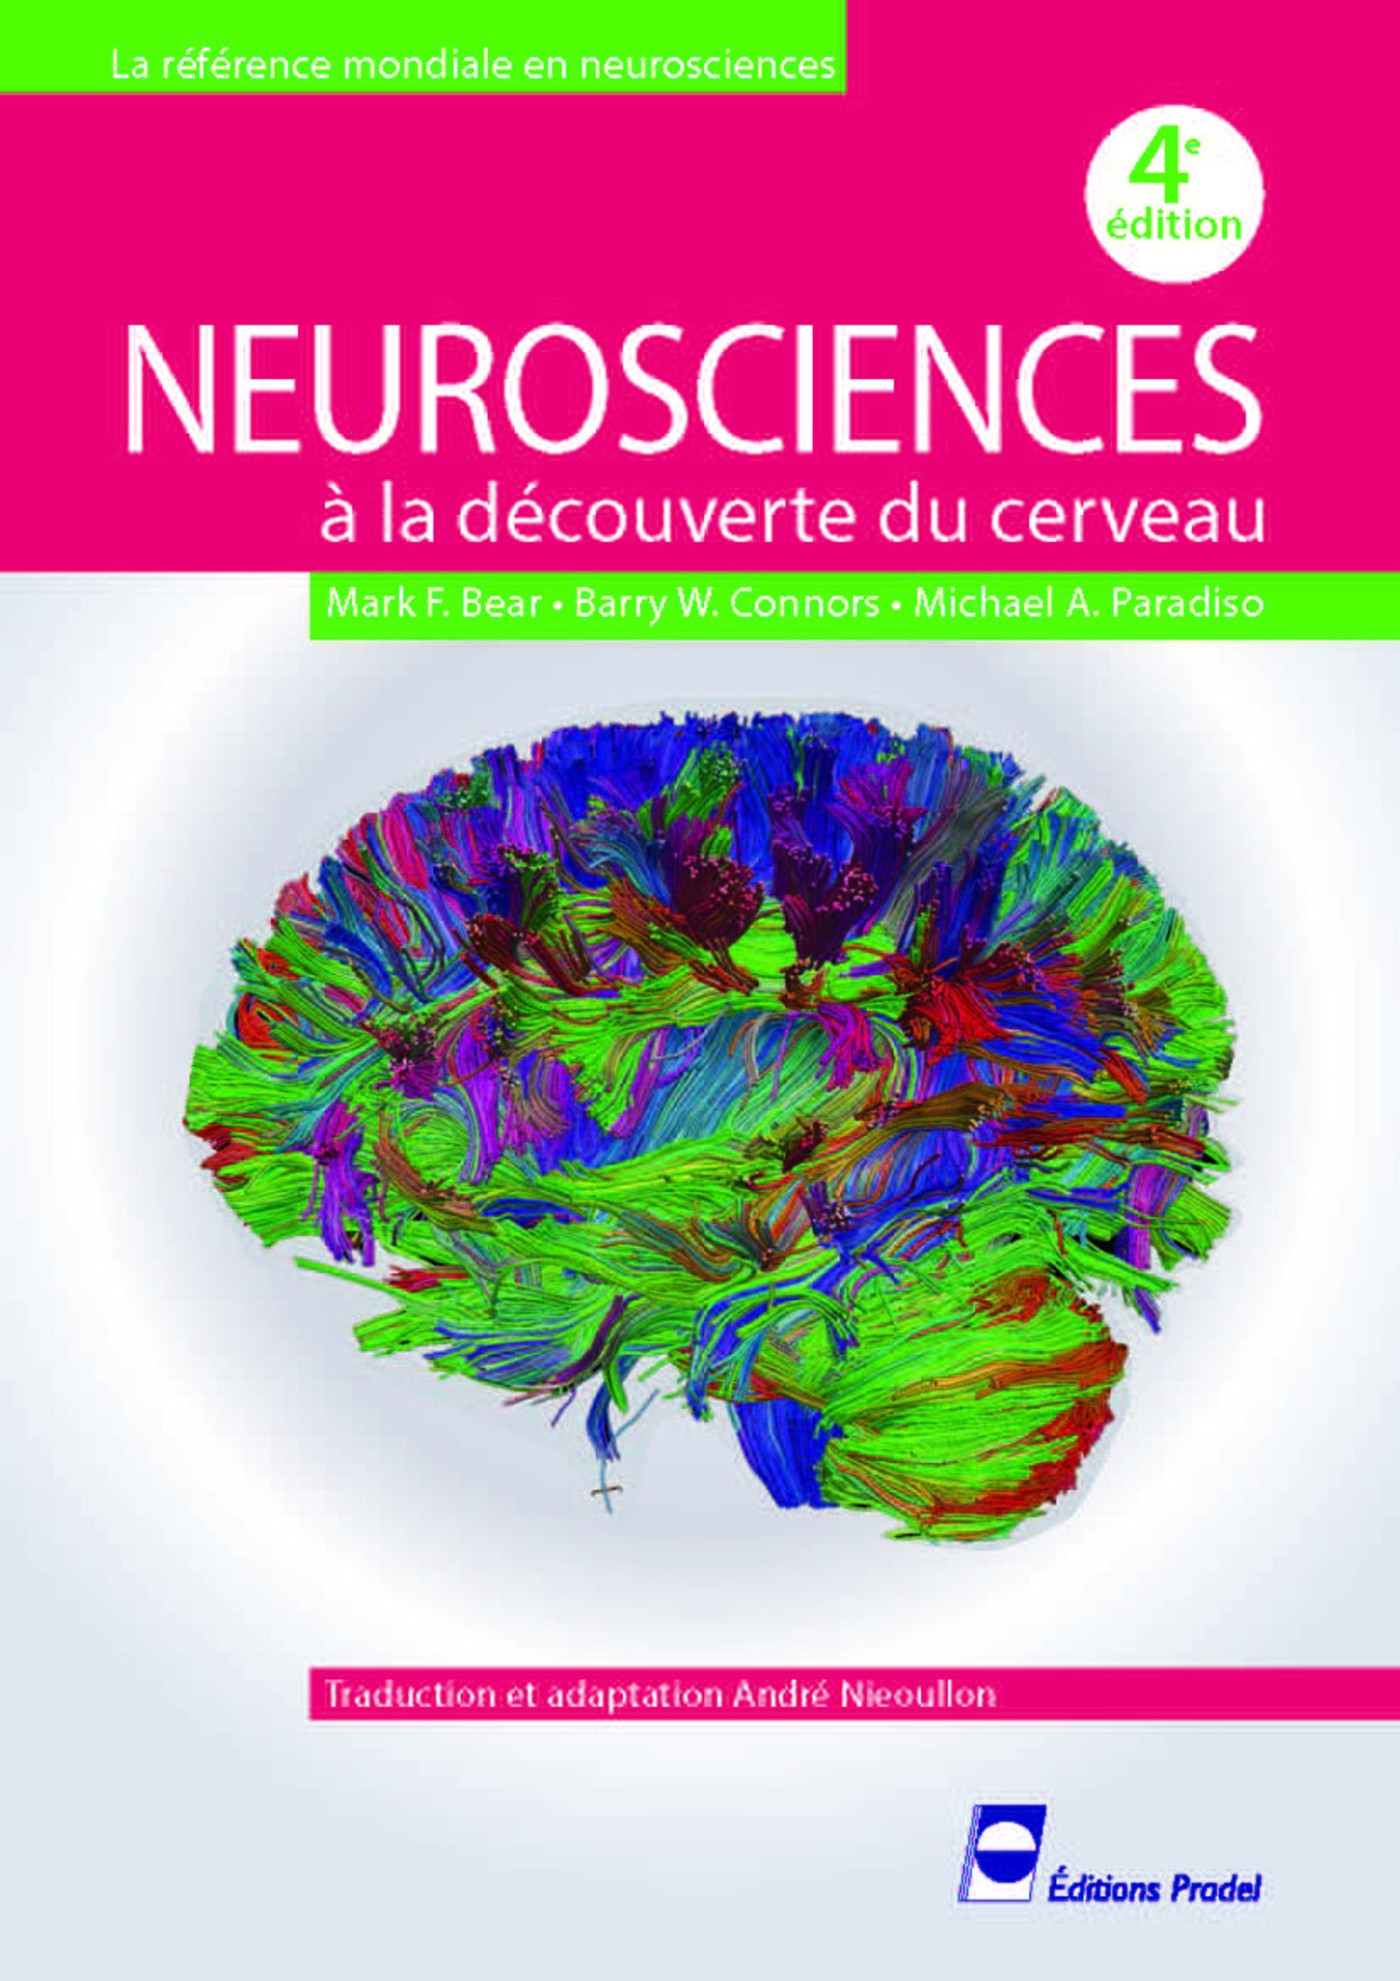 Neurosciences  A la découverte du cerveau  Mark F. Bear, Barry W